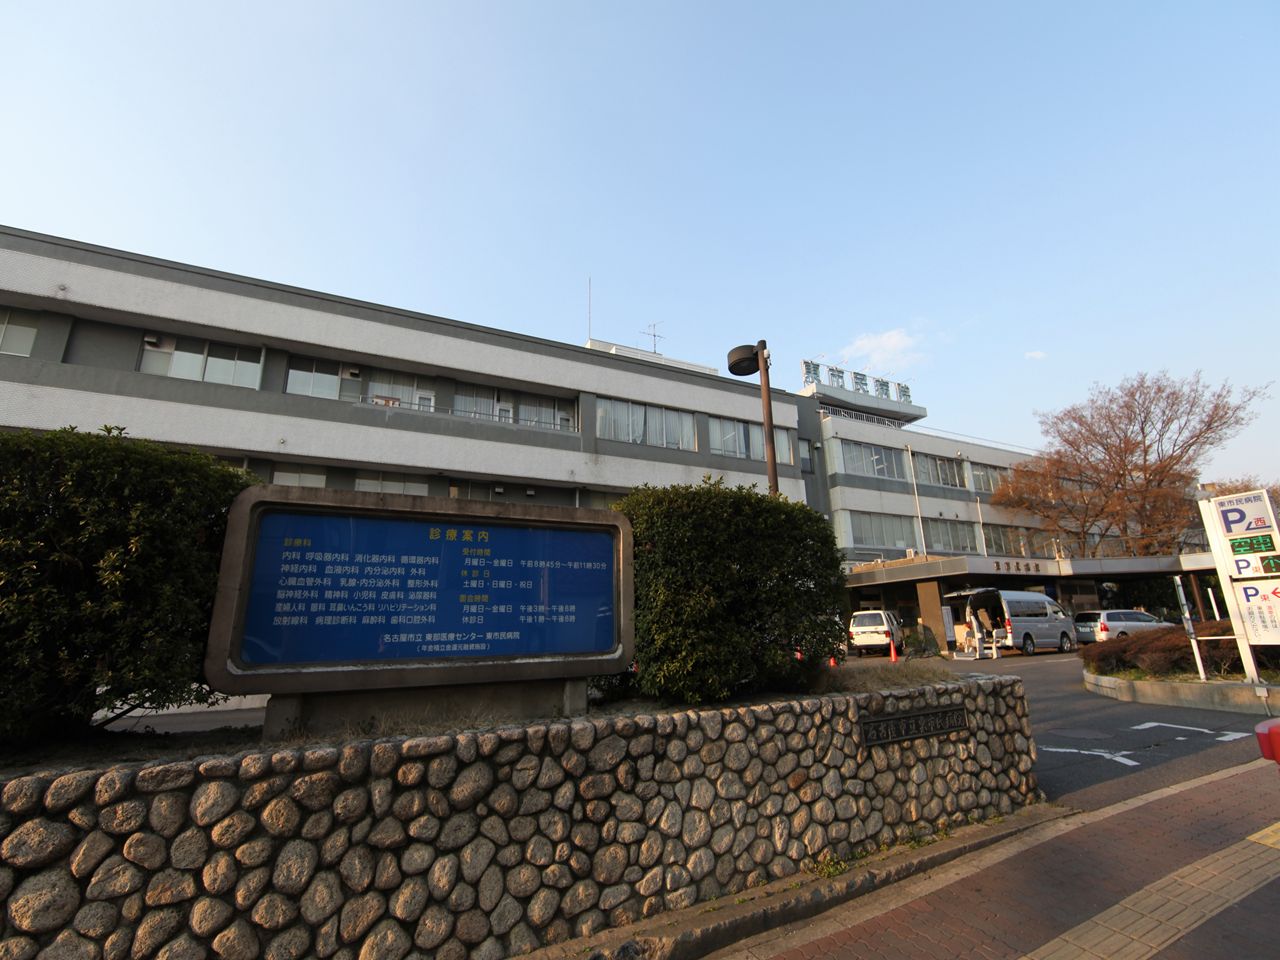 Hospital. Nagoya Municipal Eastern Medical Center East City Hospital 1000m until (General Hospital) (hospital)